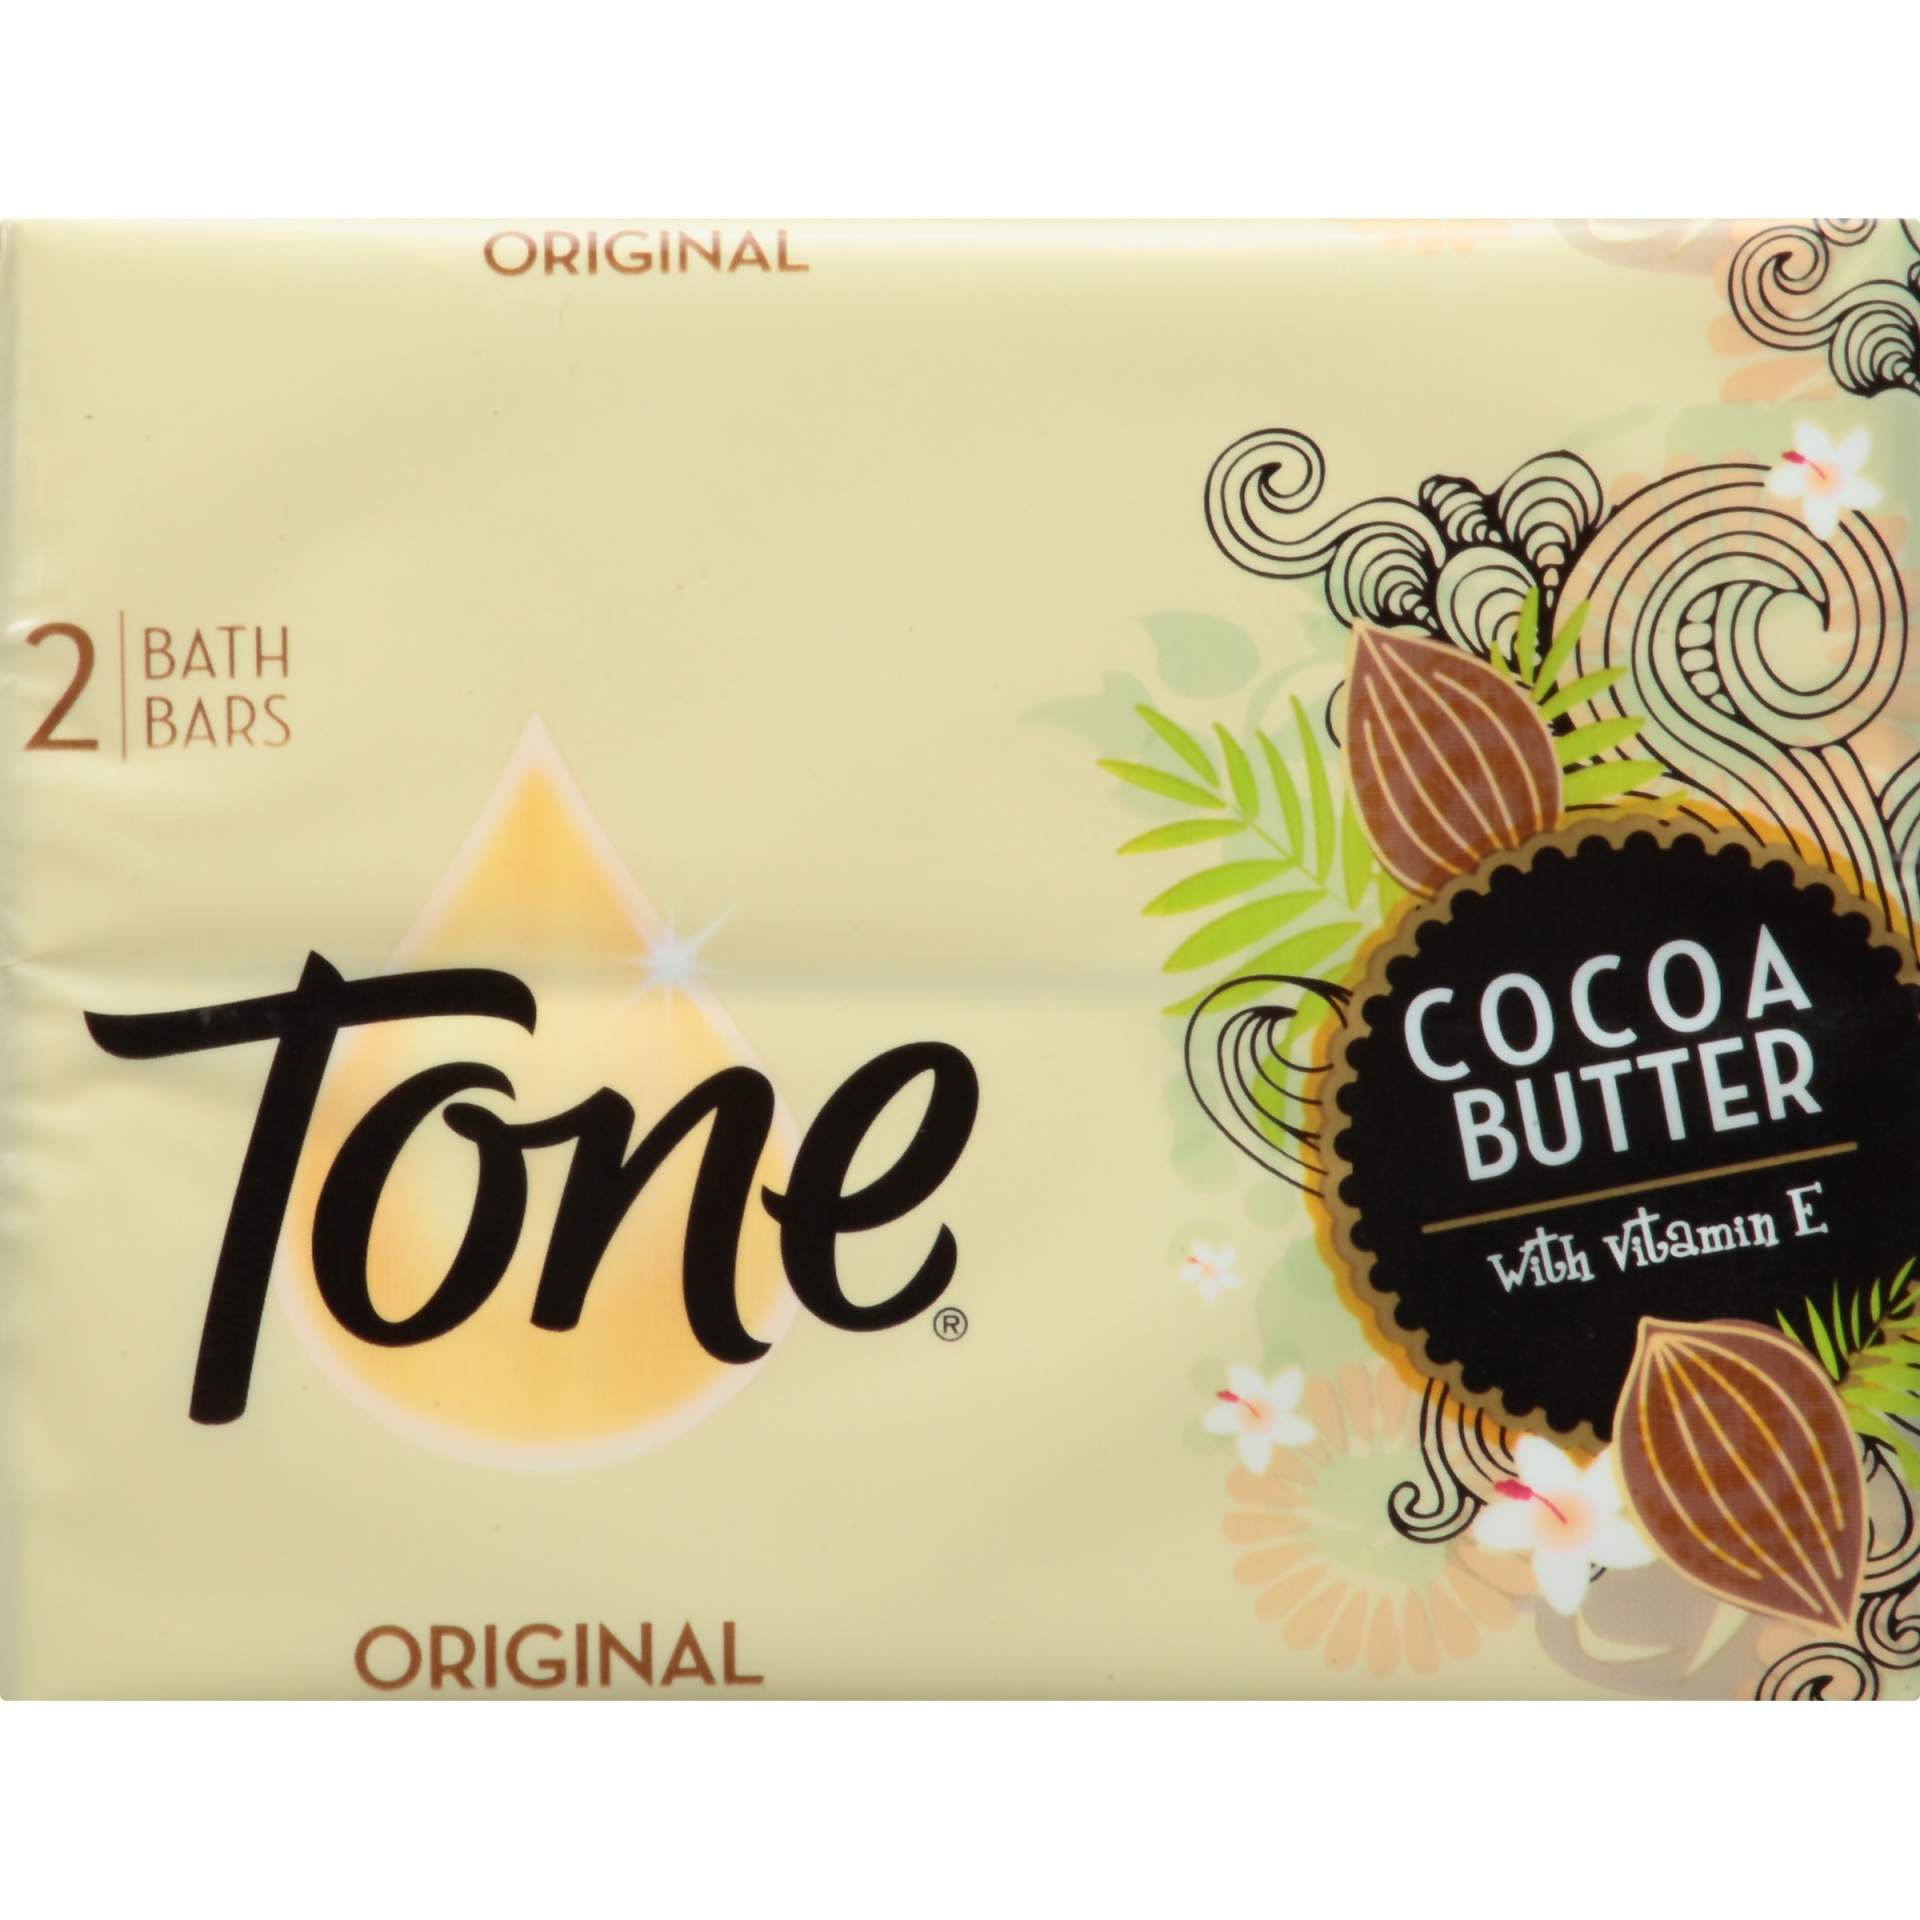 Tone Original Cocoa Butter With Vitamin E Bath Bars 2 Ct 425 Oz Shipt